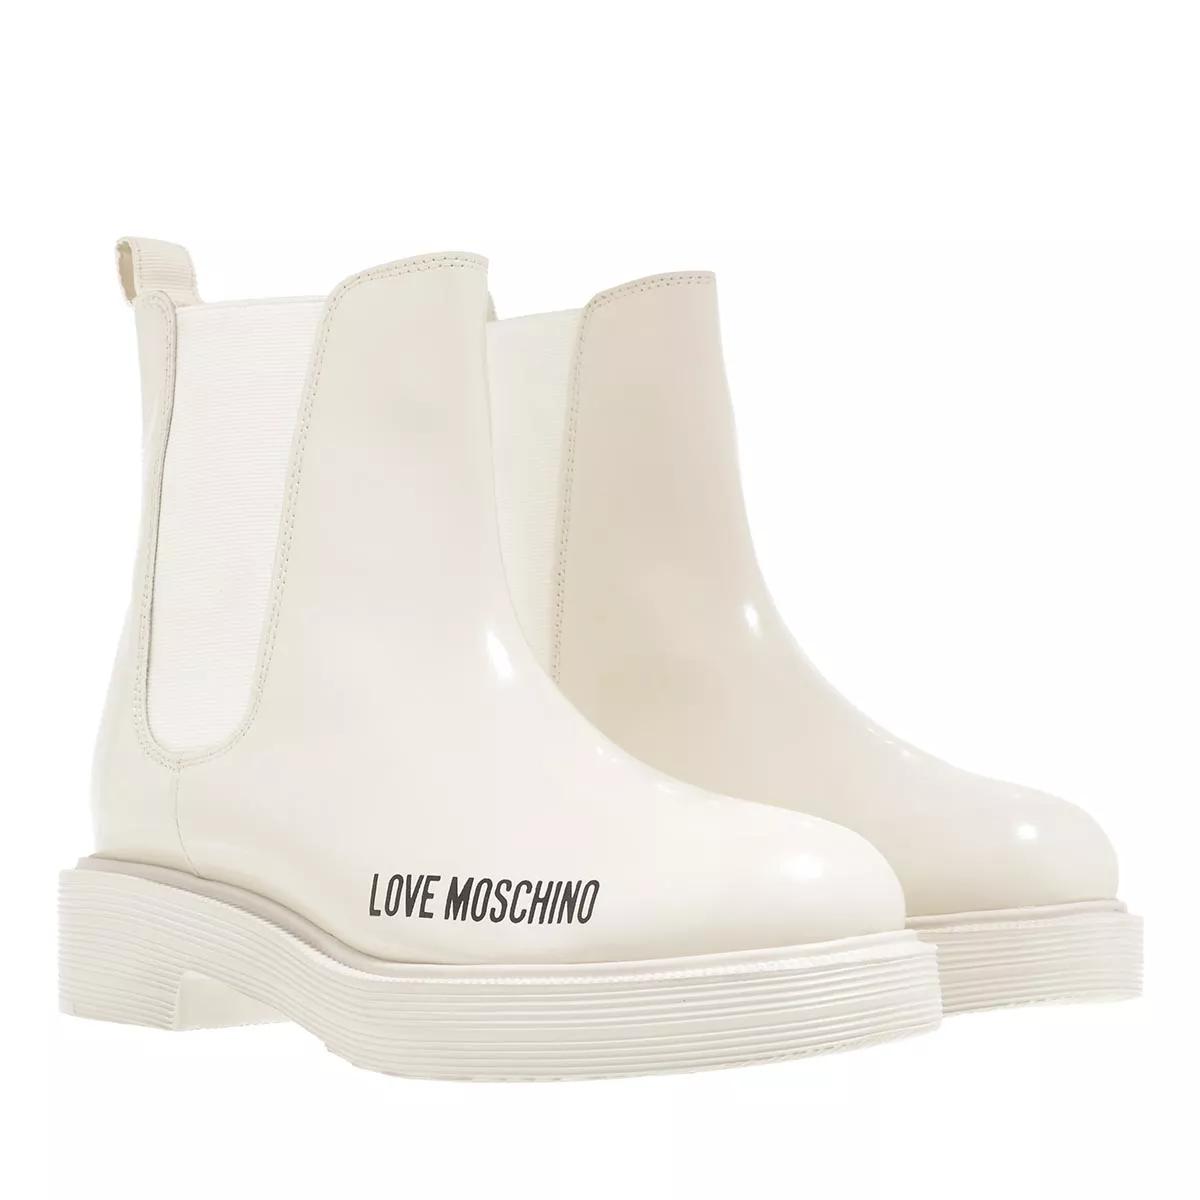 Love Moschino Boots & Stiefeletten - Sca.Nod.City40 Vit.Abrasivato - Gr. 37 (EU) - in Creme - für Damen von Love Moschino